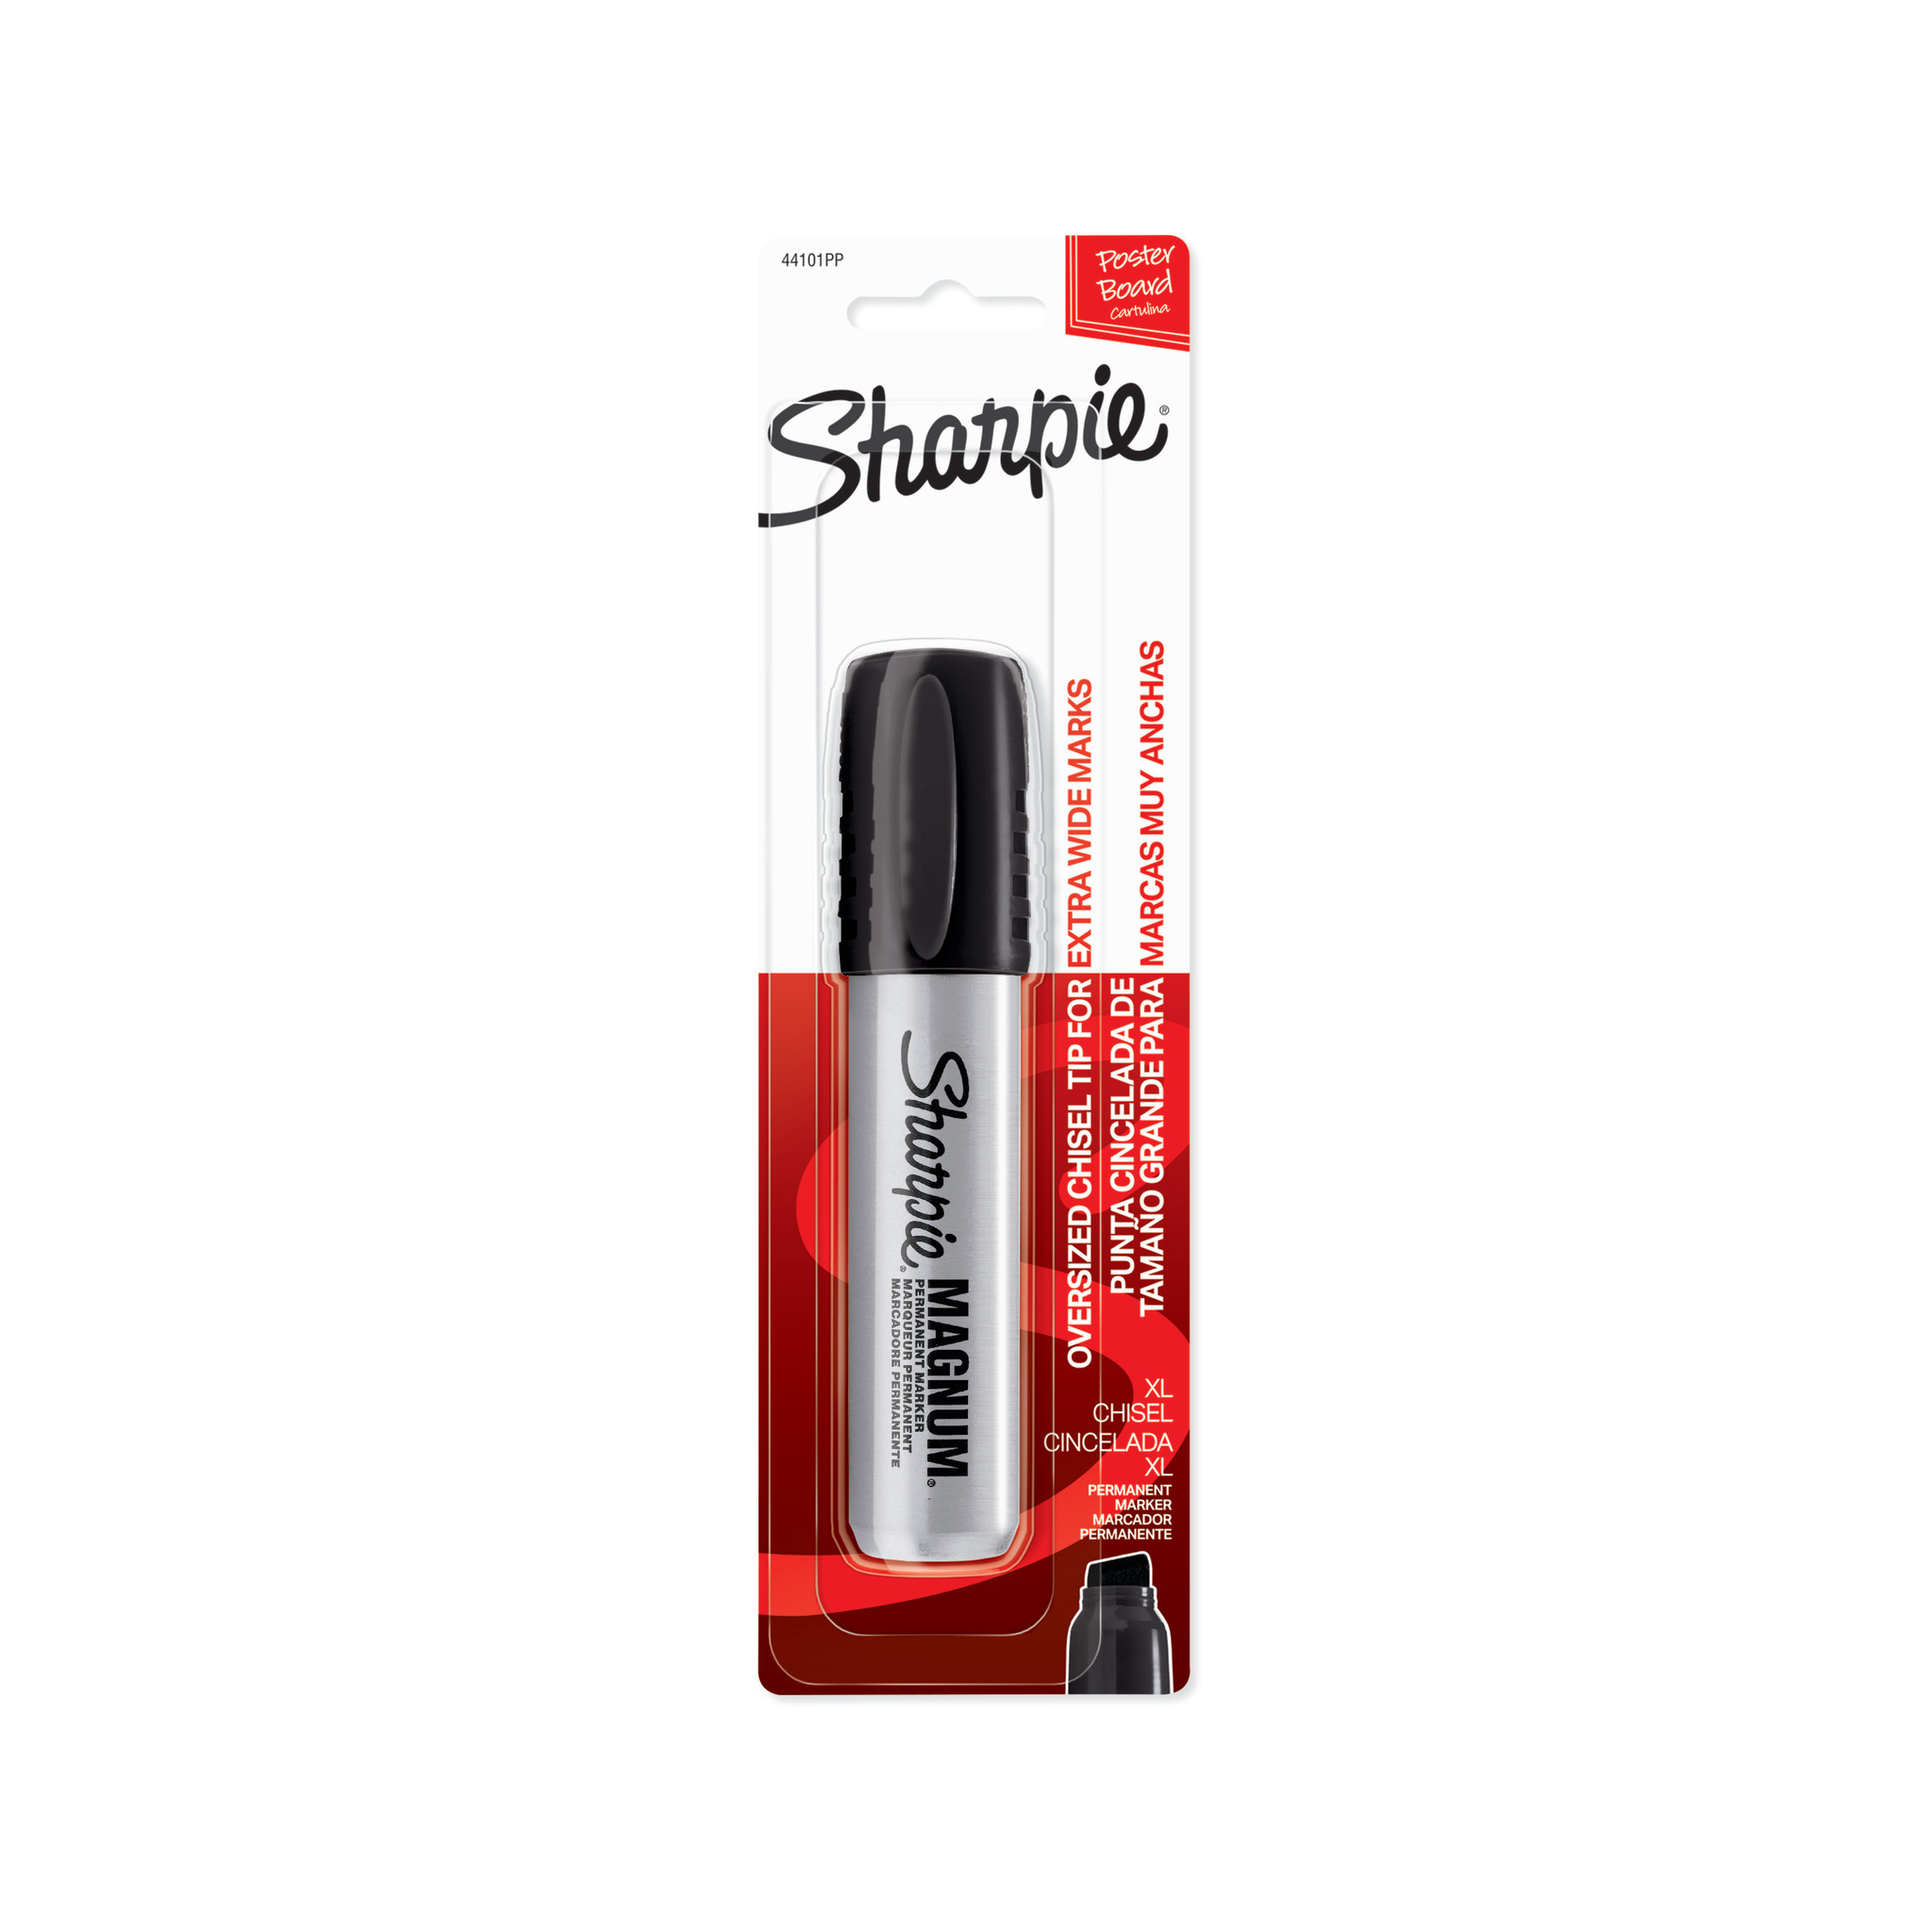 Sharpie Permanent Marker Brush - RISD Store